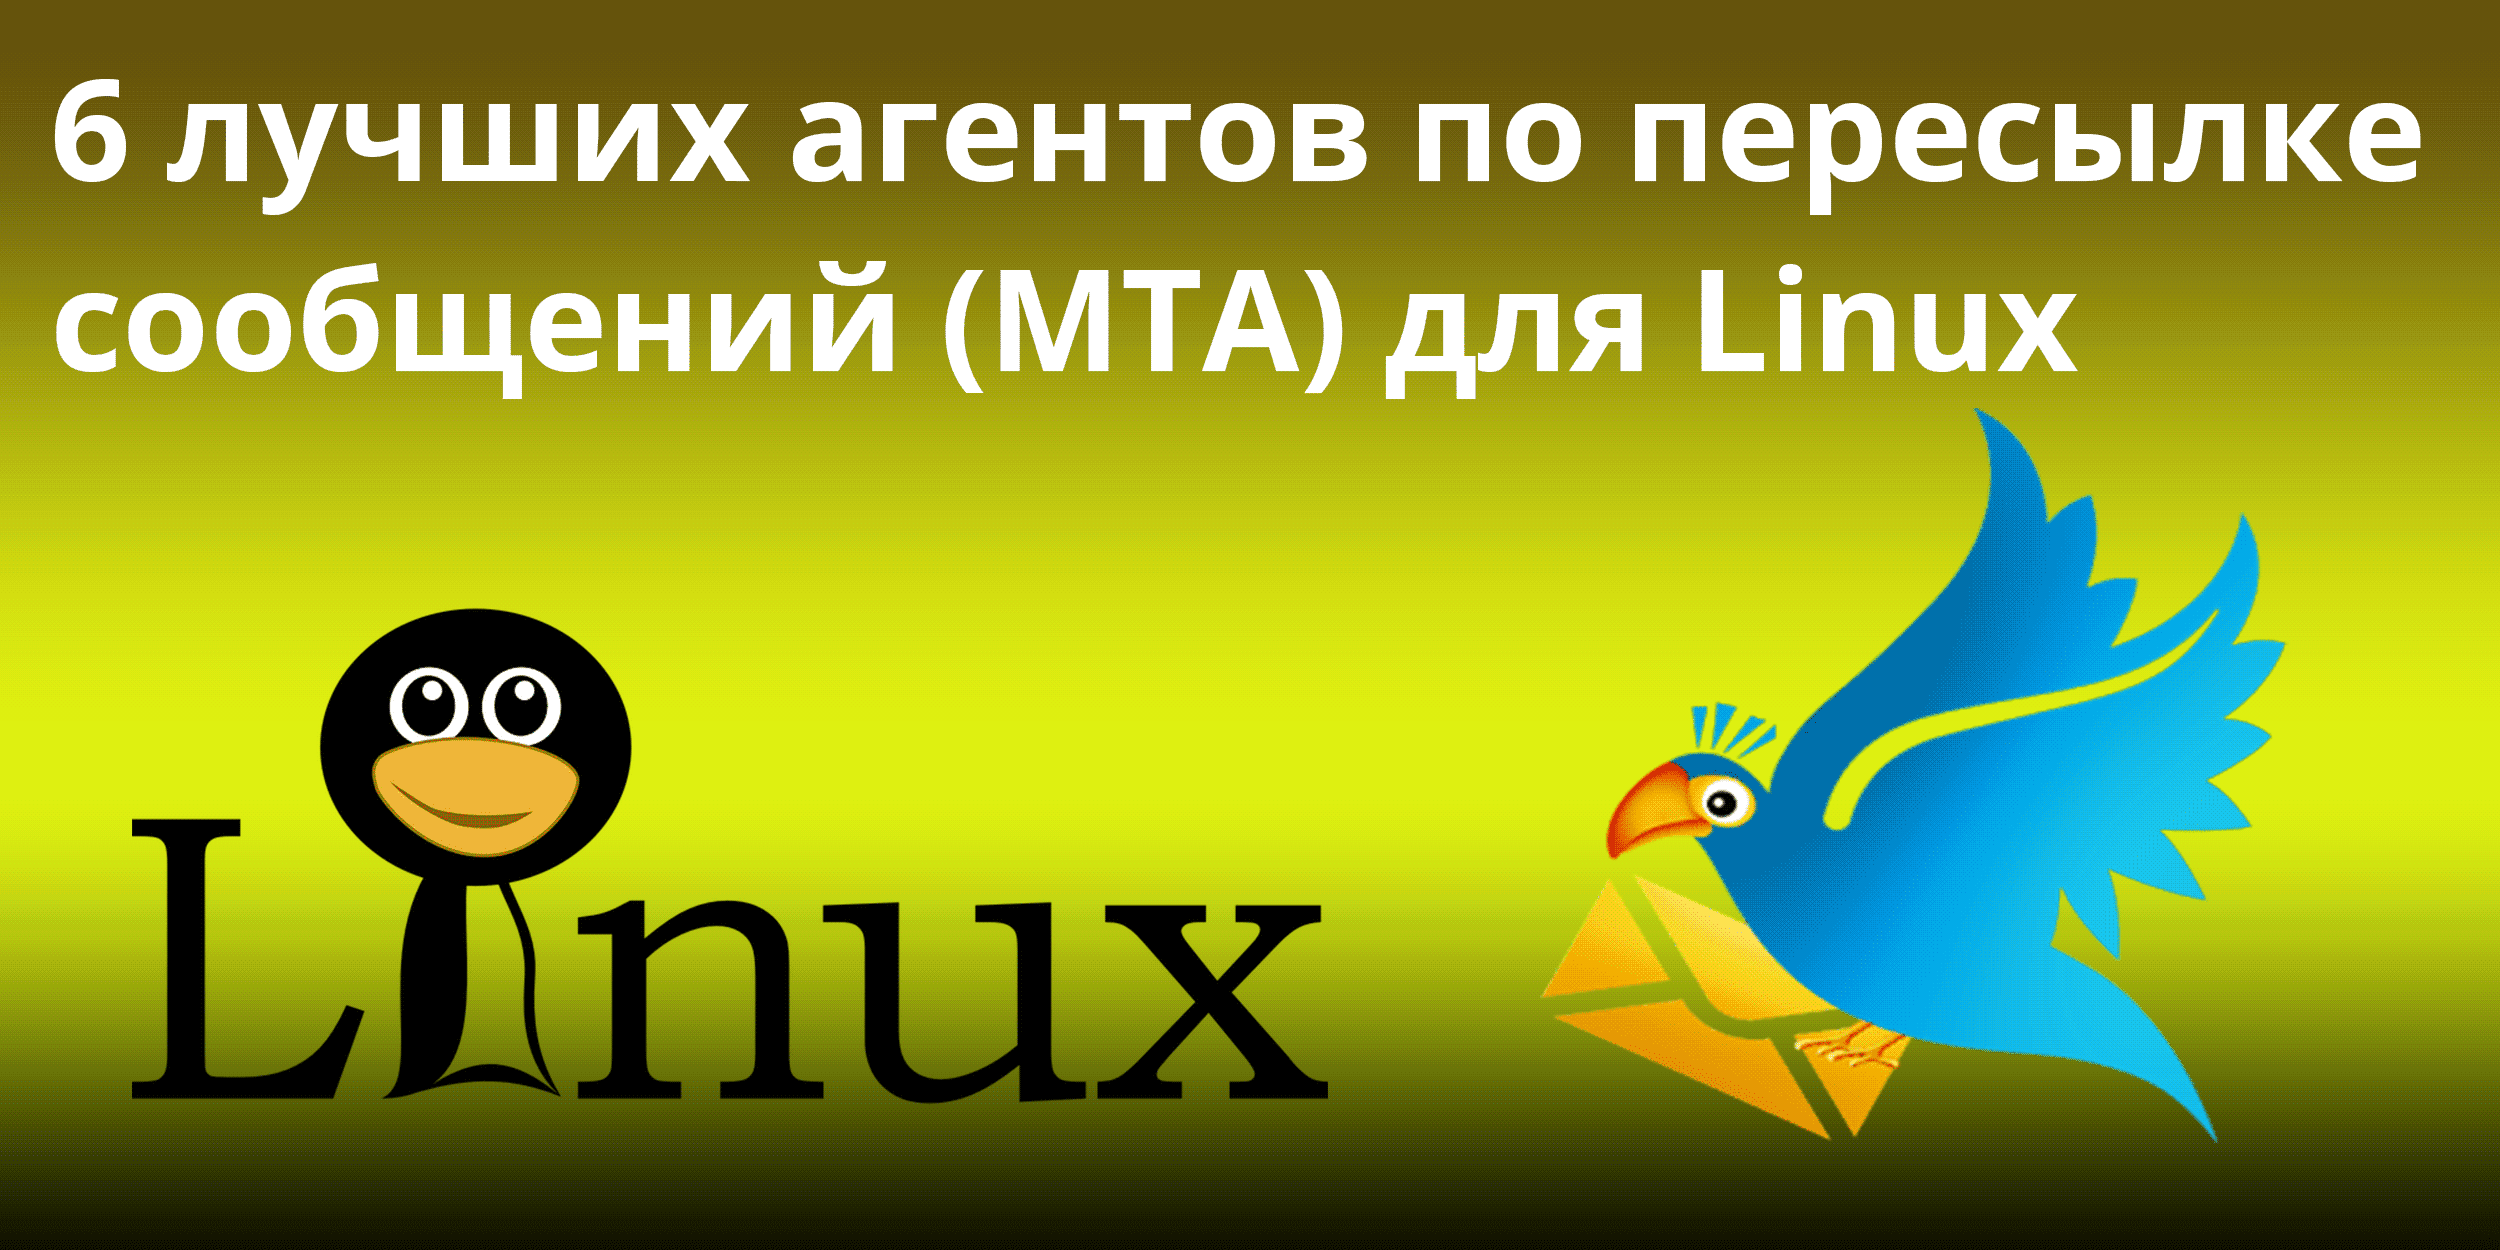 6 лучших агентов по пересылке почты (MTA) для Linux